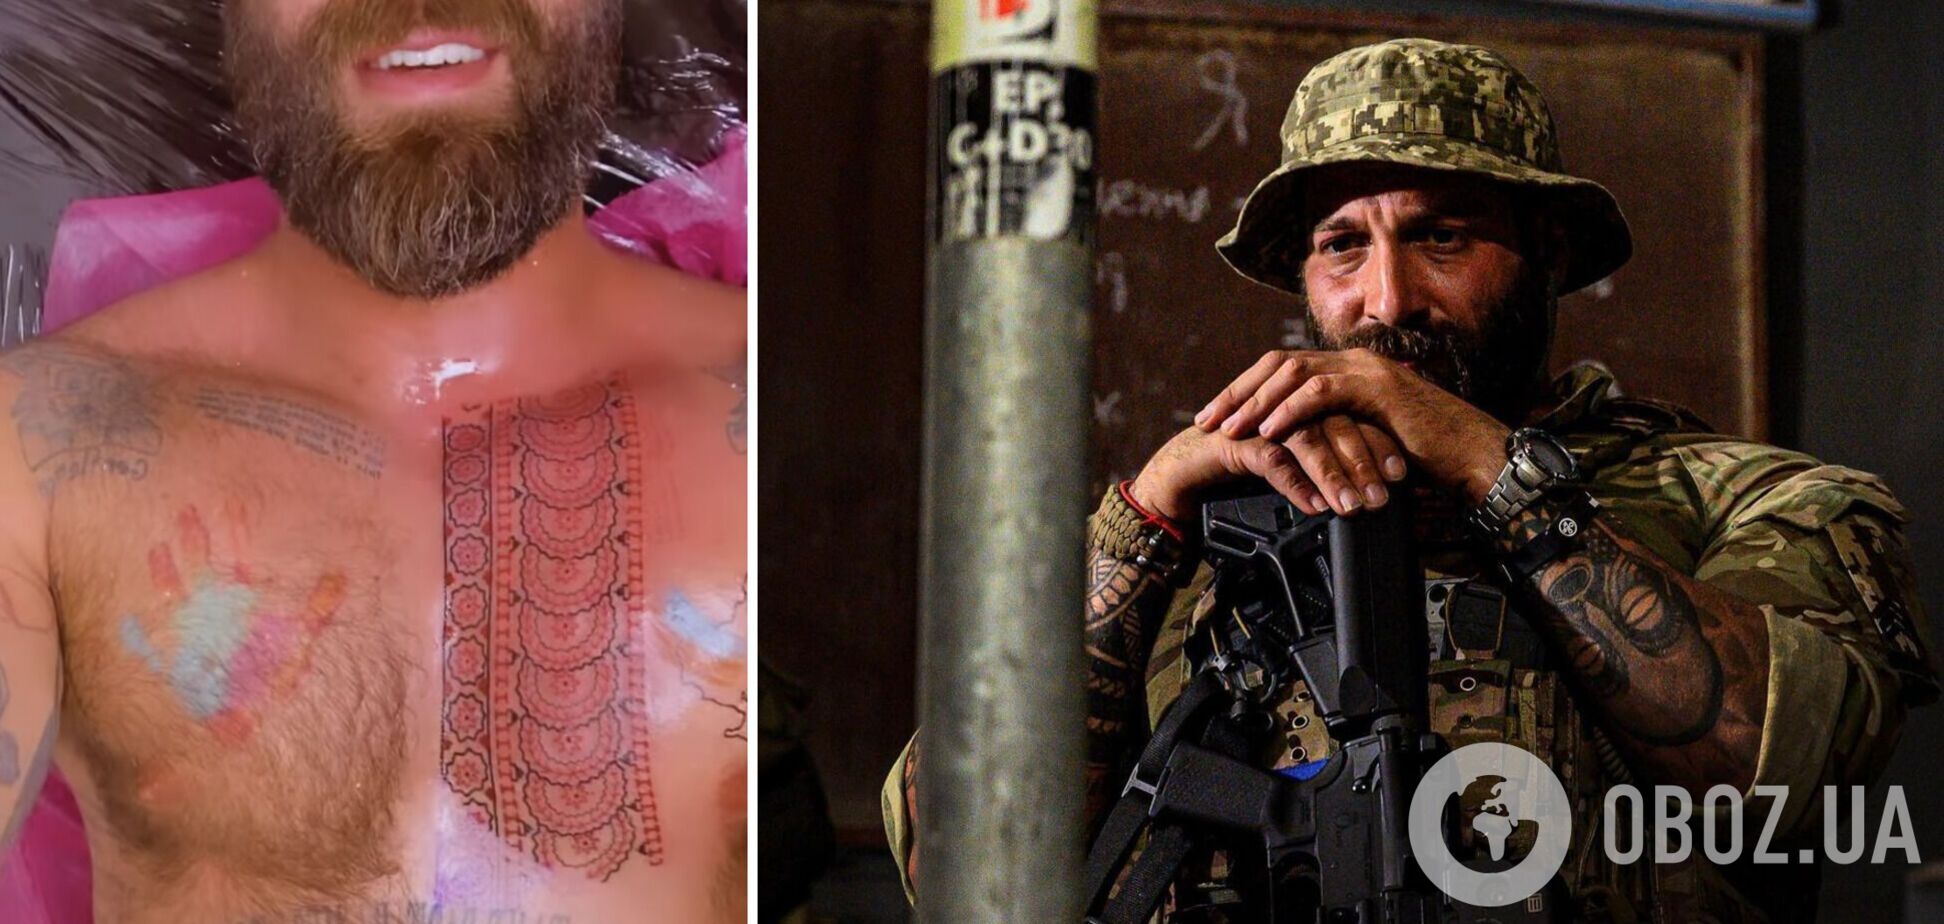 'Это моя новая броня': ведущий-воин Даниэль Салем набил вышиванку на груди. Фото